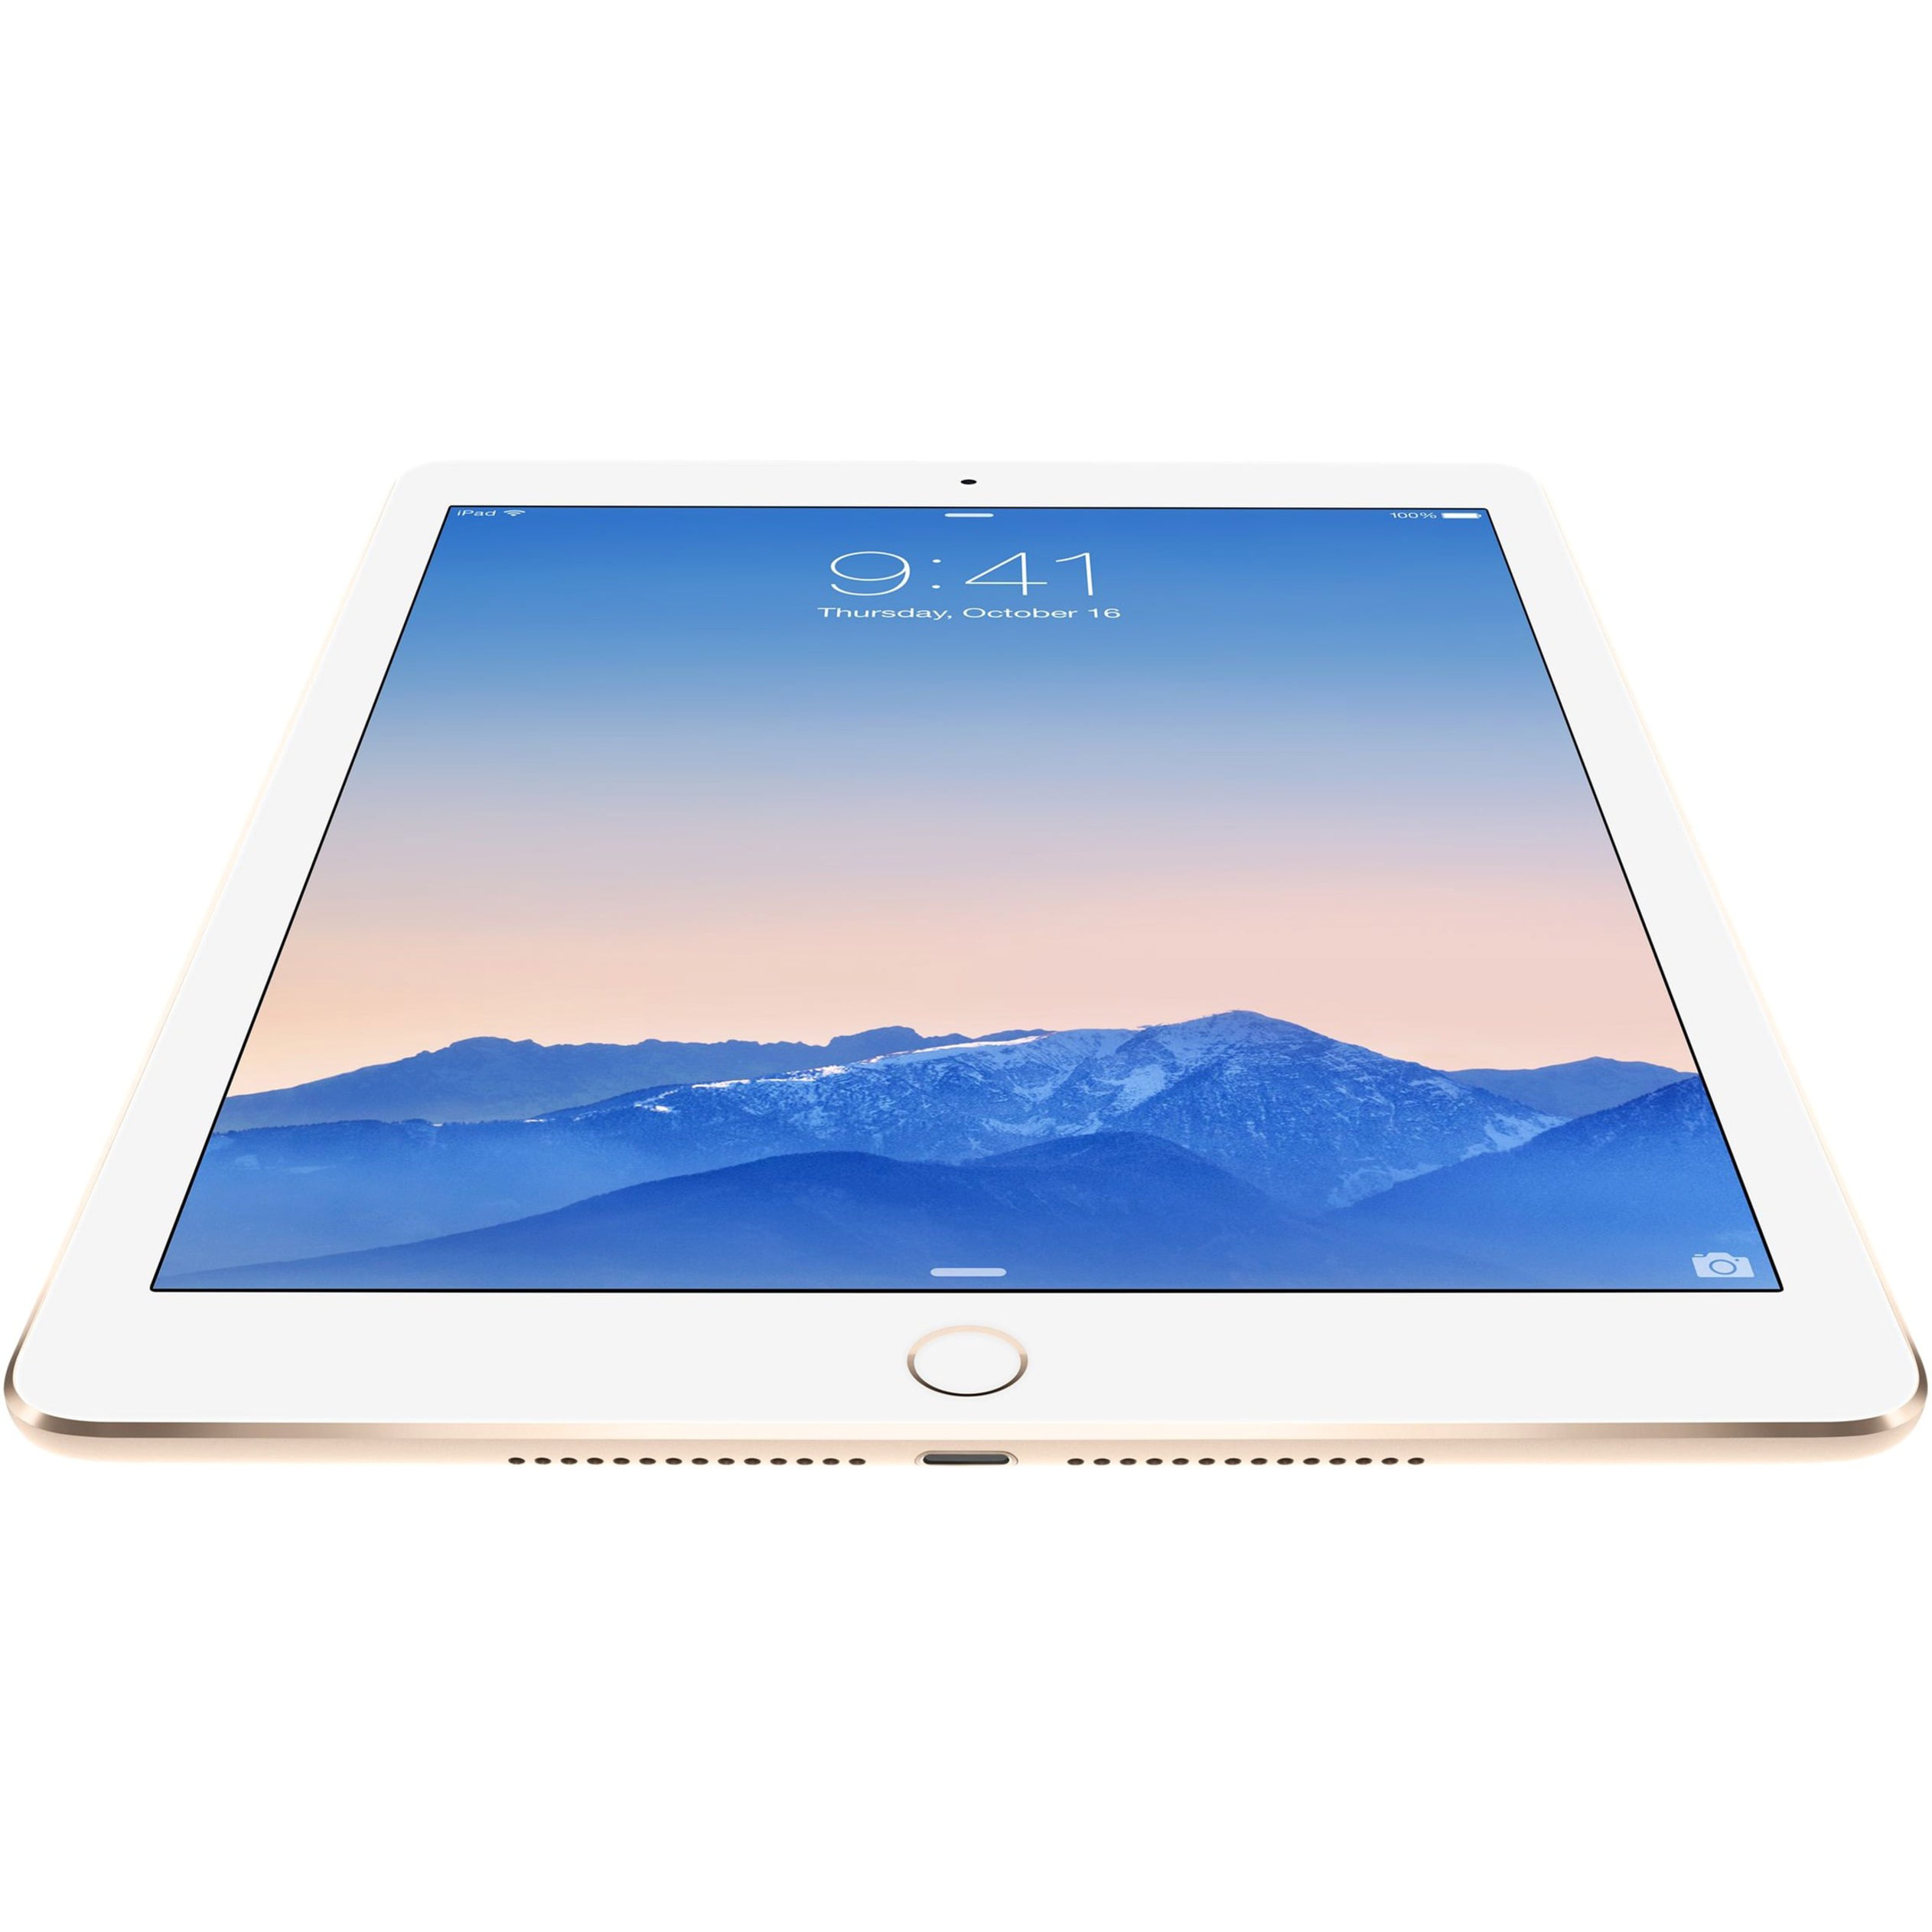 Apple iPad Air 2 MH2P2LL/A Tablet, 9.7